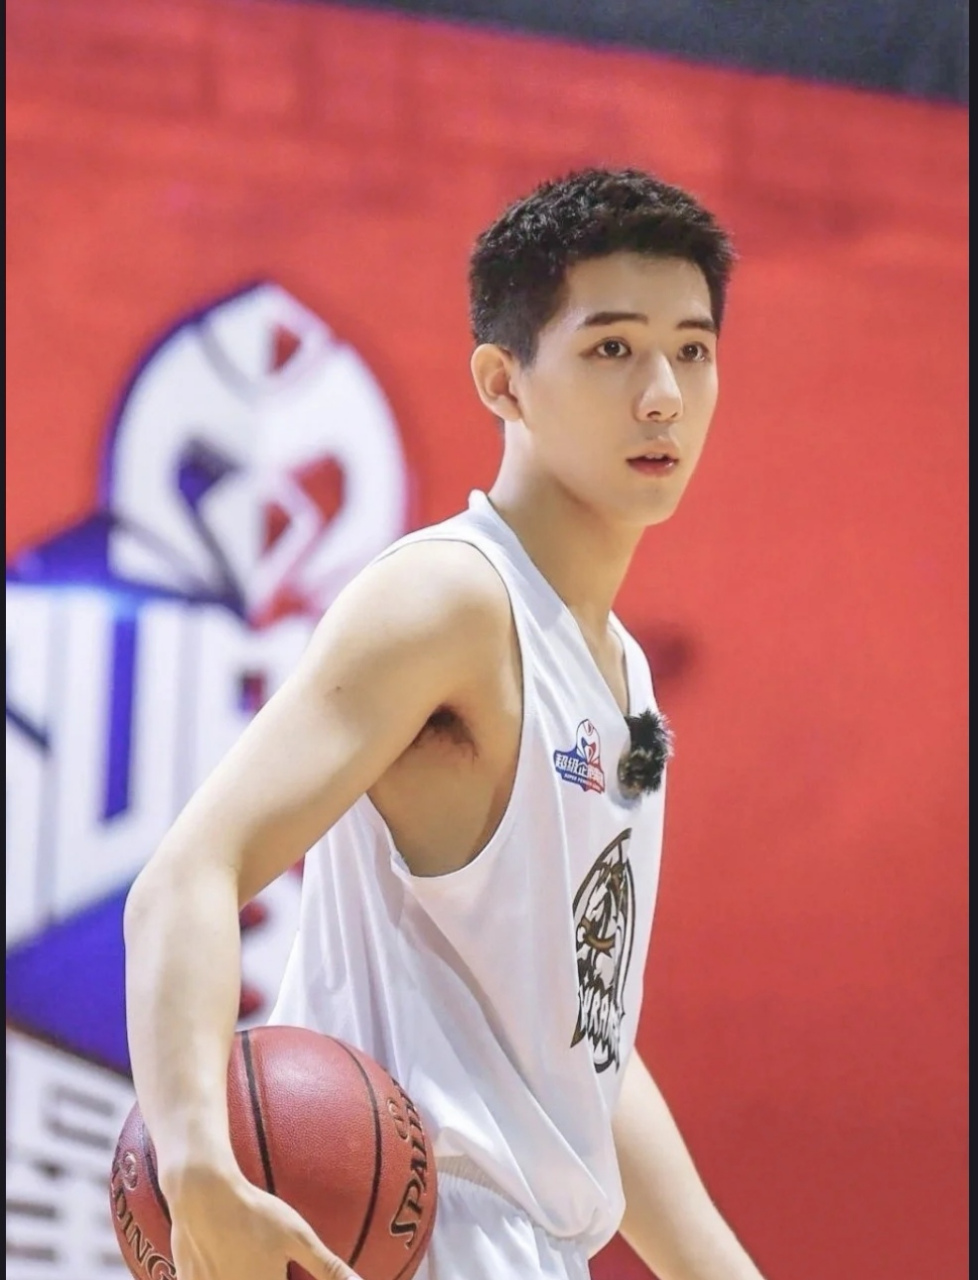 少年感十足的篮球小哥,王安宇也太欲了吧 抱着篮球的小哥哥真是越看越